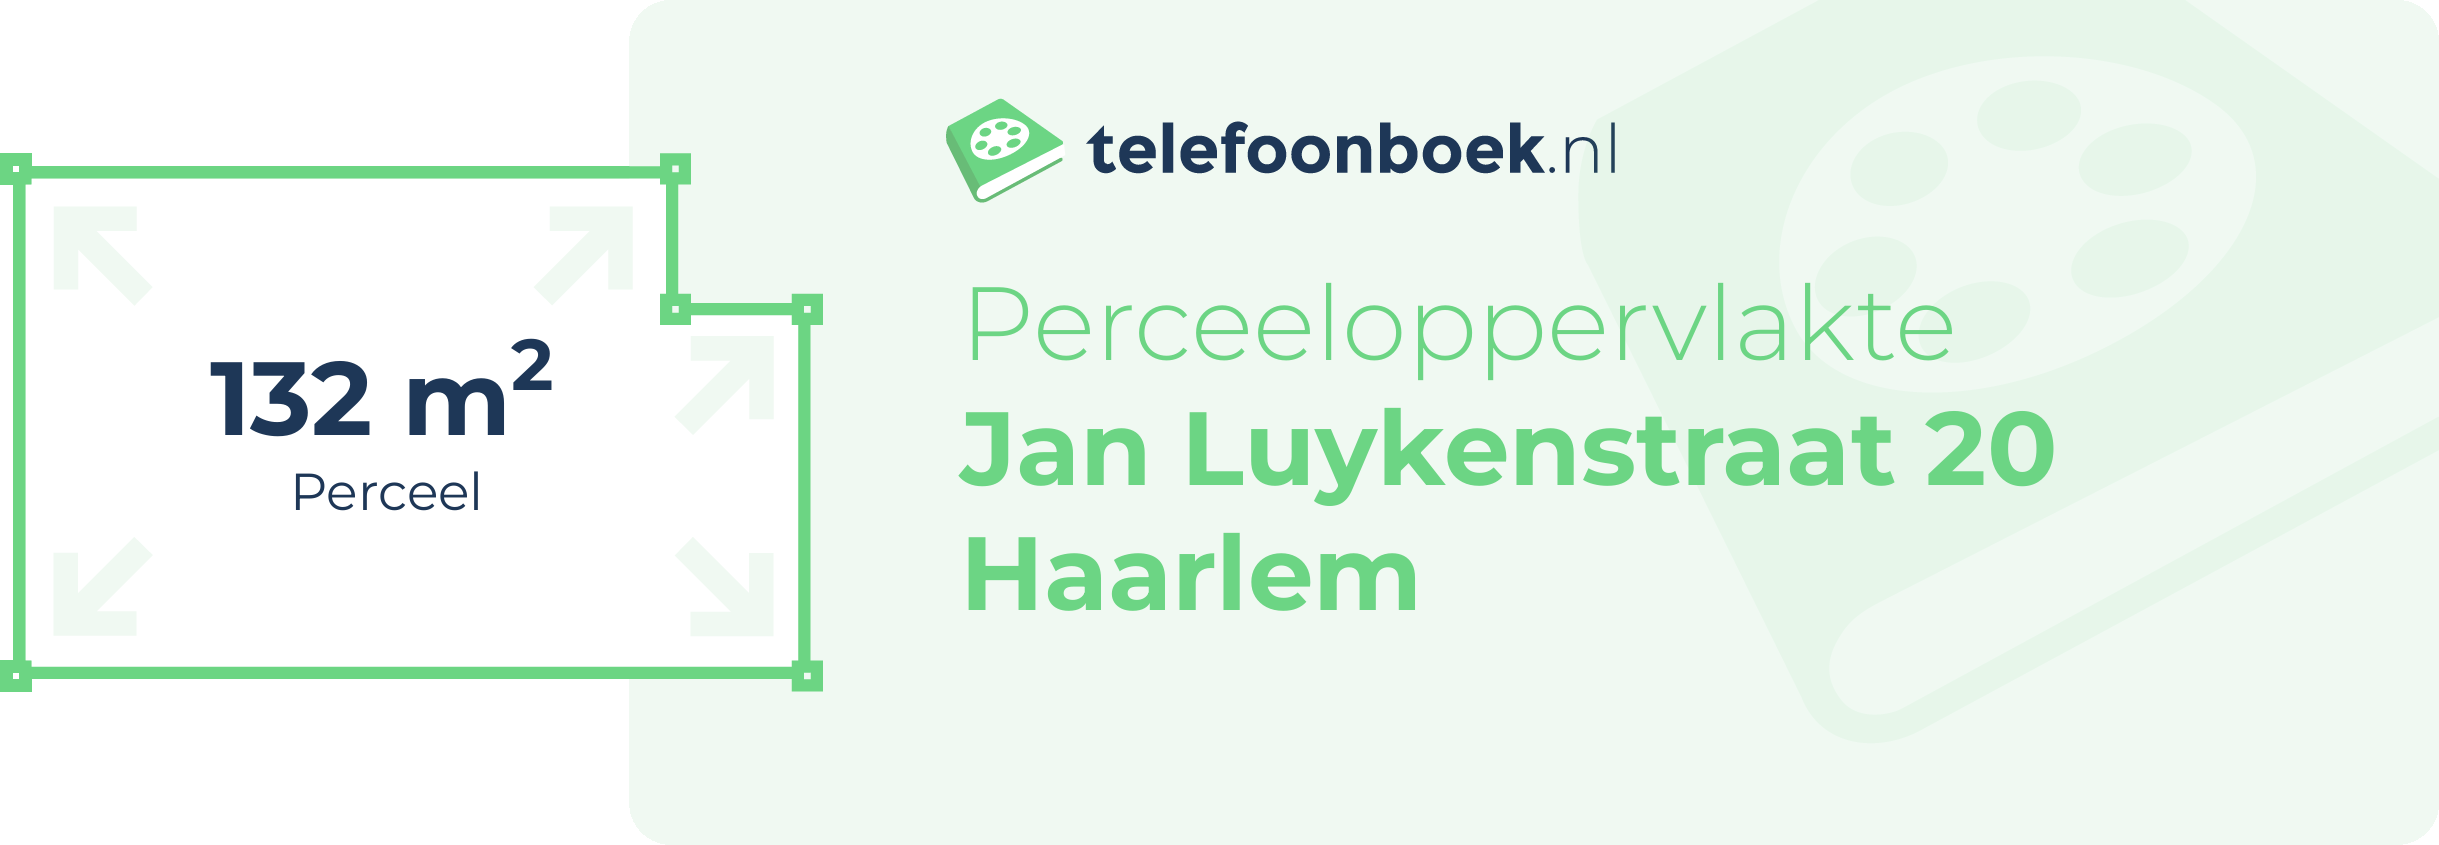 Perceeloppervlakte Jan Luykenstraat 20 Haarlem